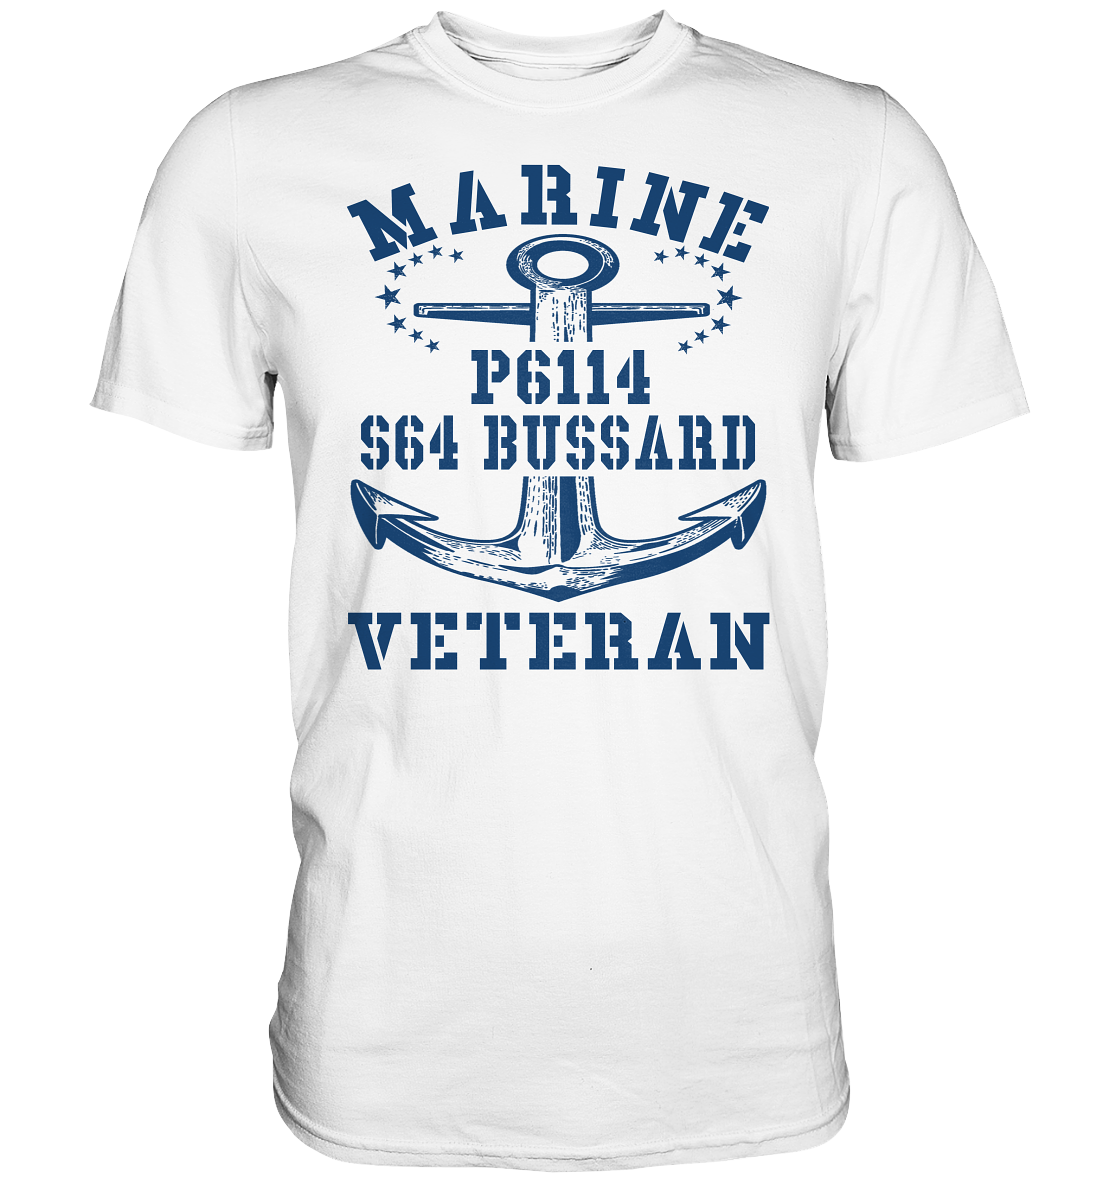 FK-Schnellboot P6114 BUSSARD Marine Veteran - Premium Shirt